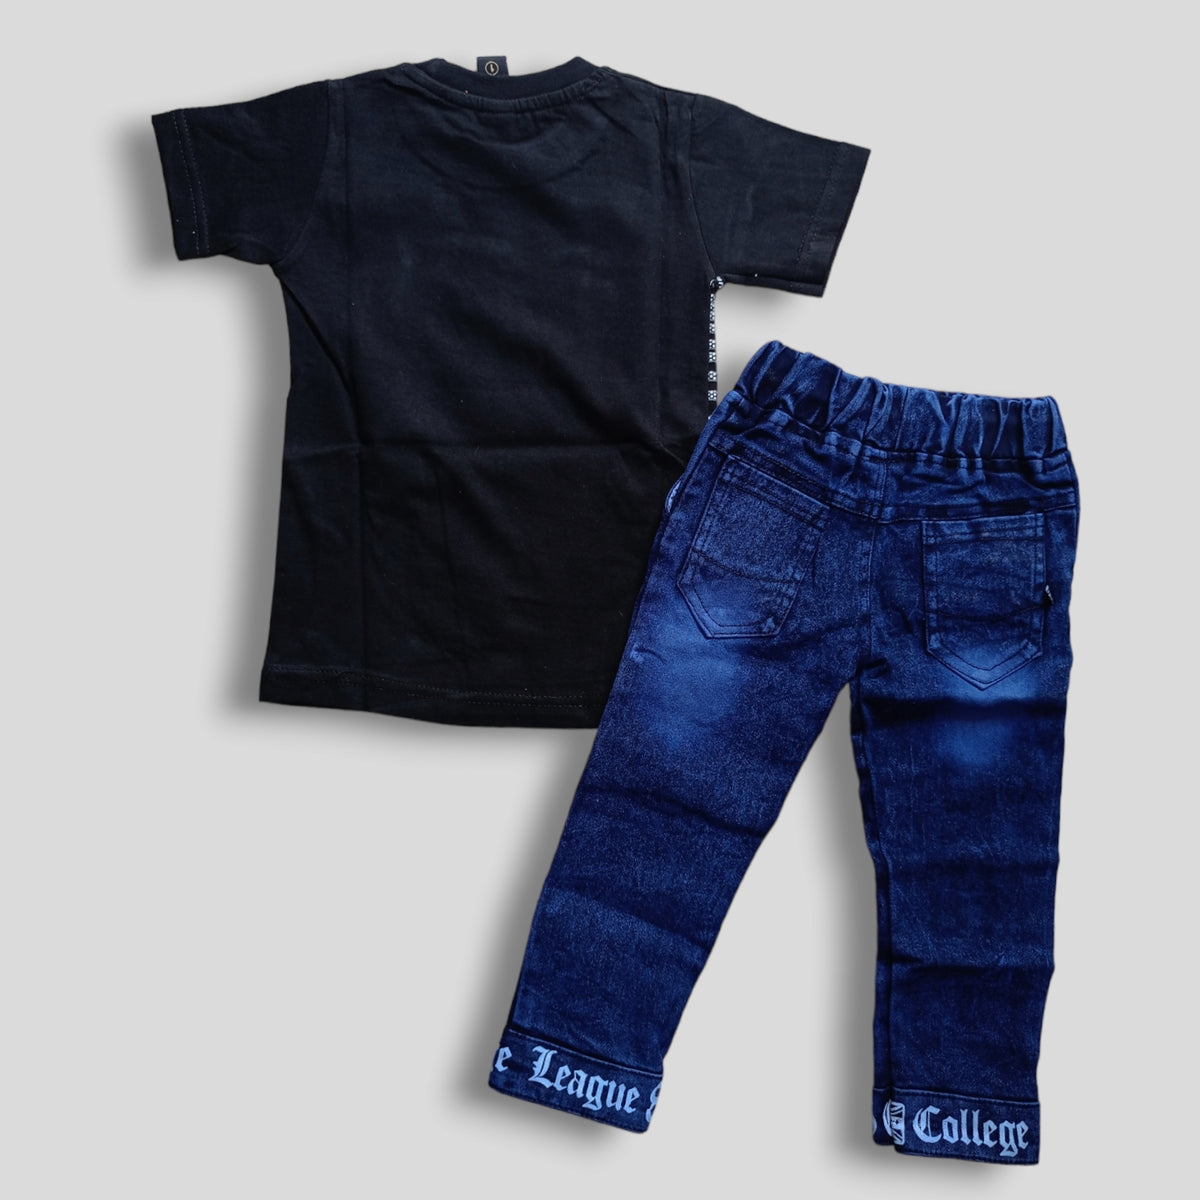 Razor Black T-shirt & Jeans